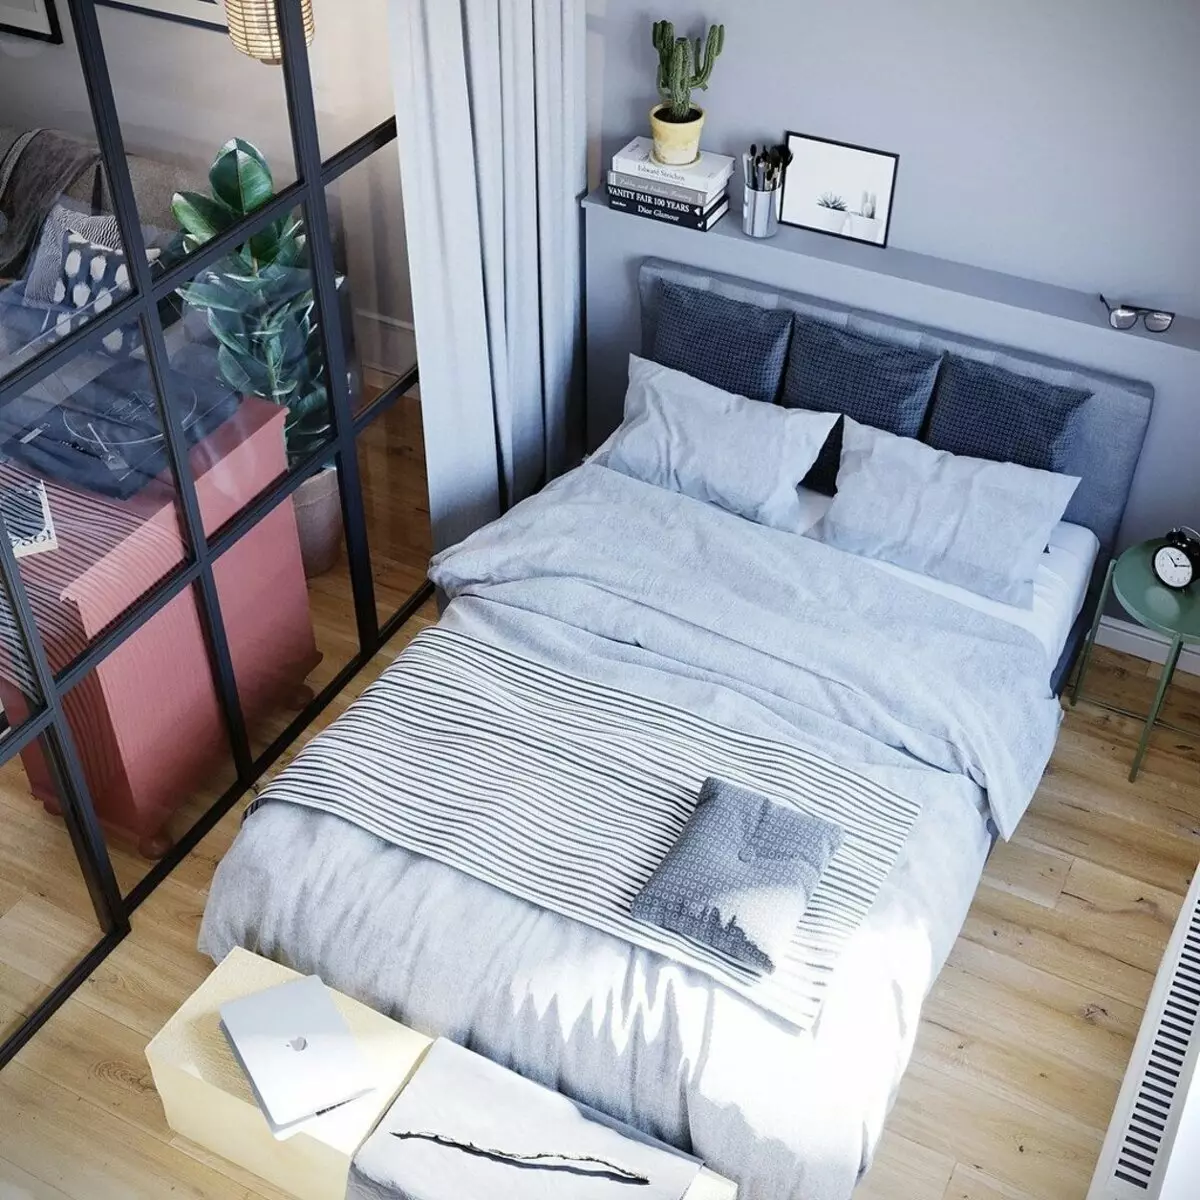 Çok küçük bir yatak odası nasıl ayarlanır: 8 ipucu ve tasarımcının görüşü 14166_23